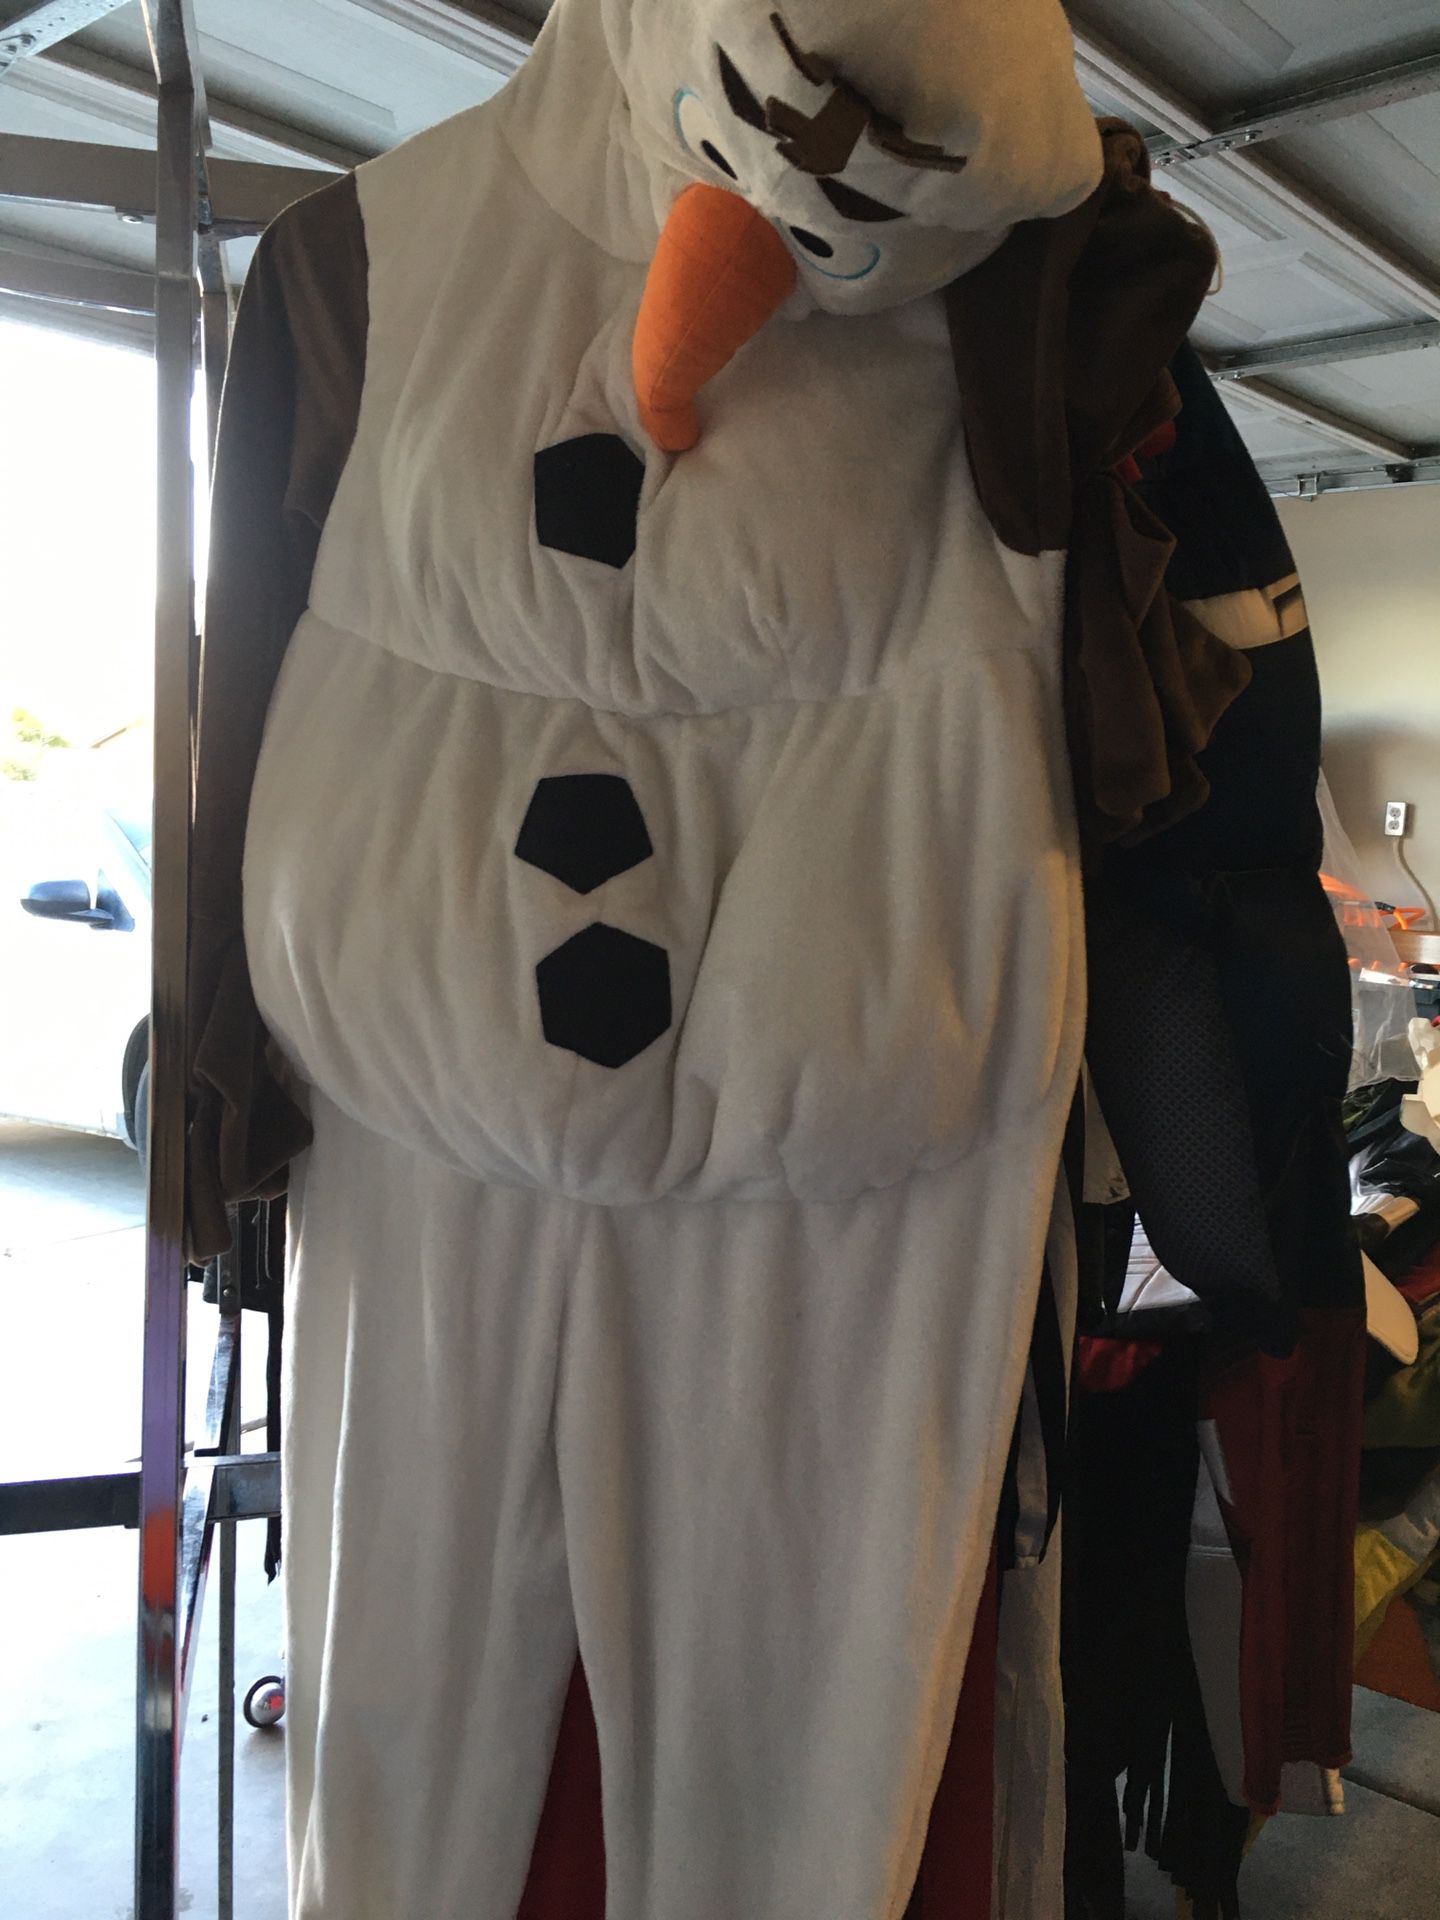 Olaf size 7/8